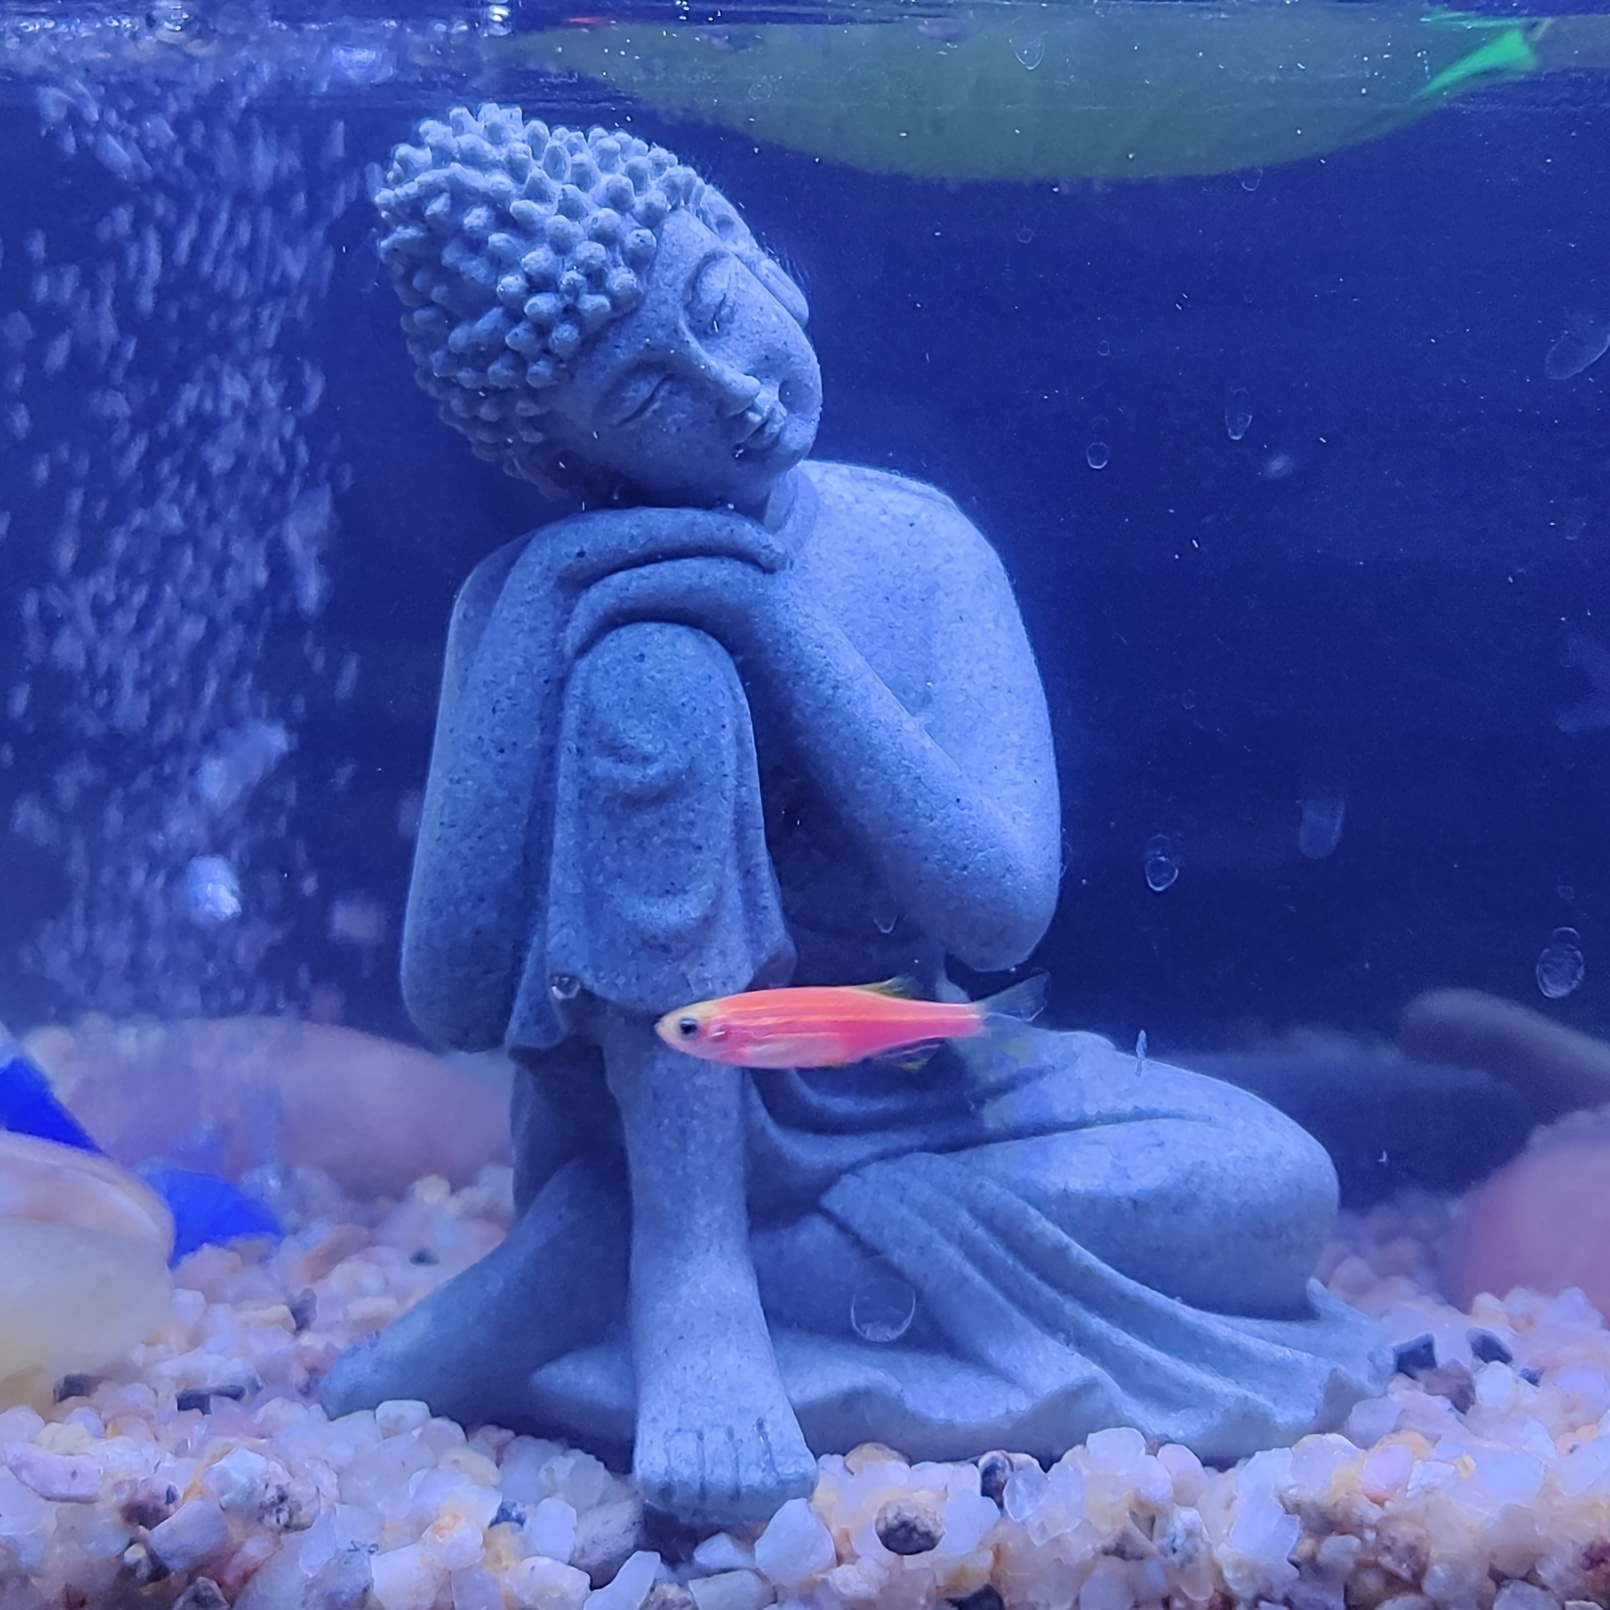 Déco aquarium Bouddha